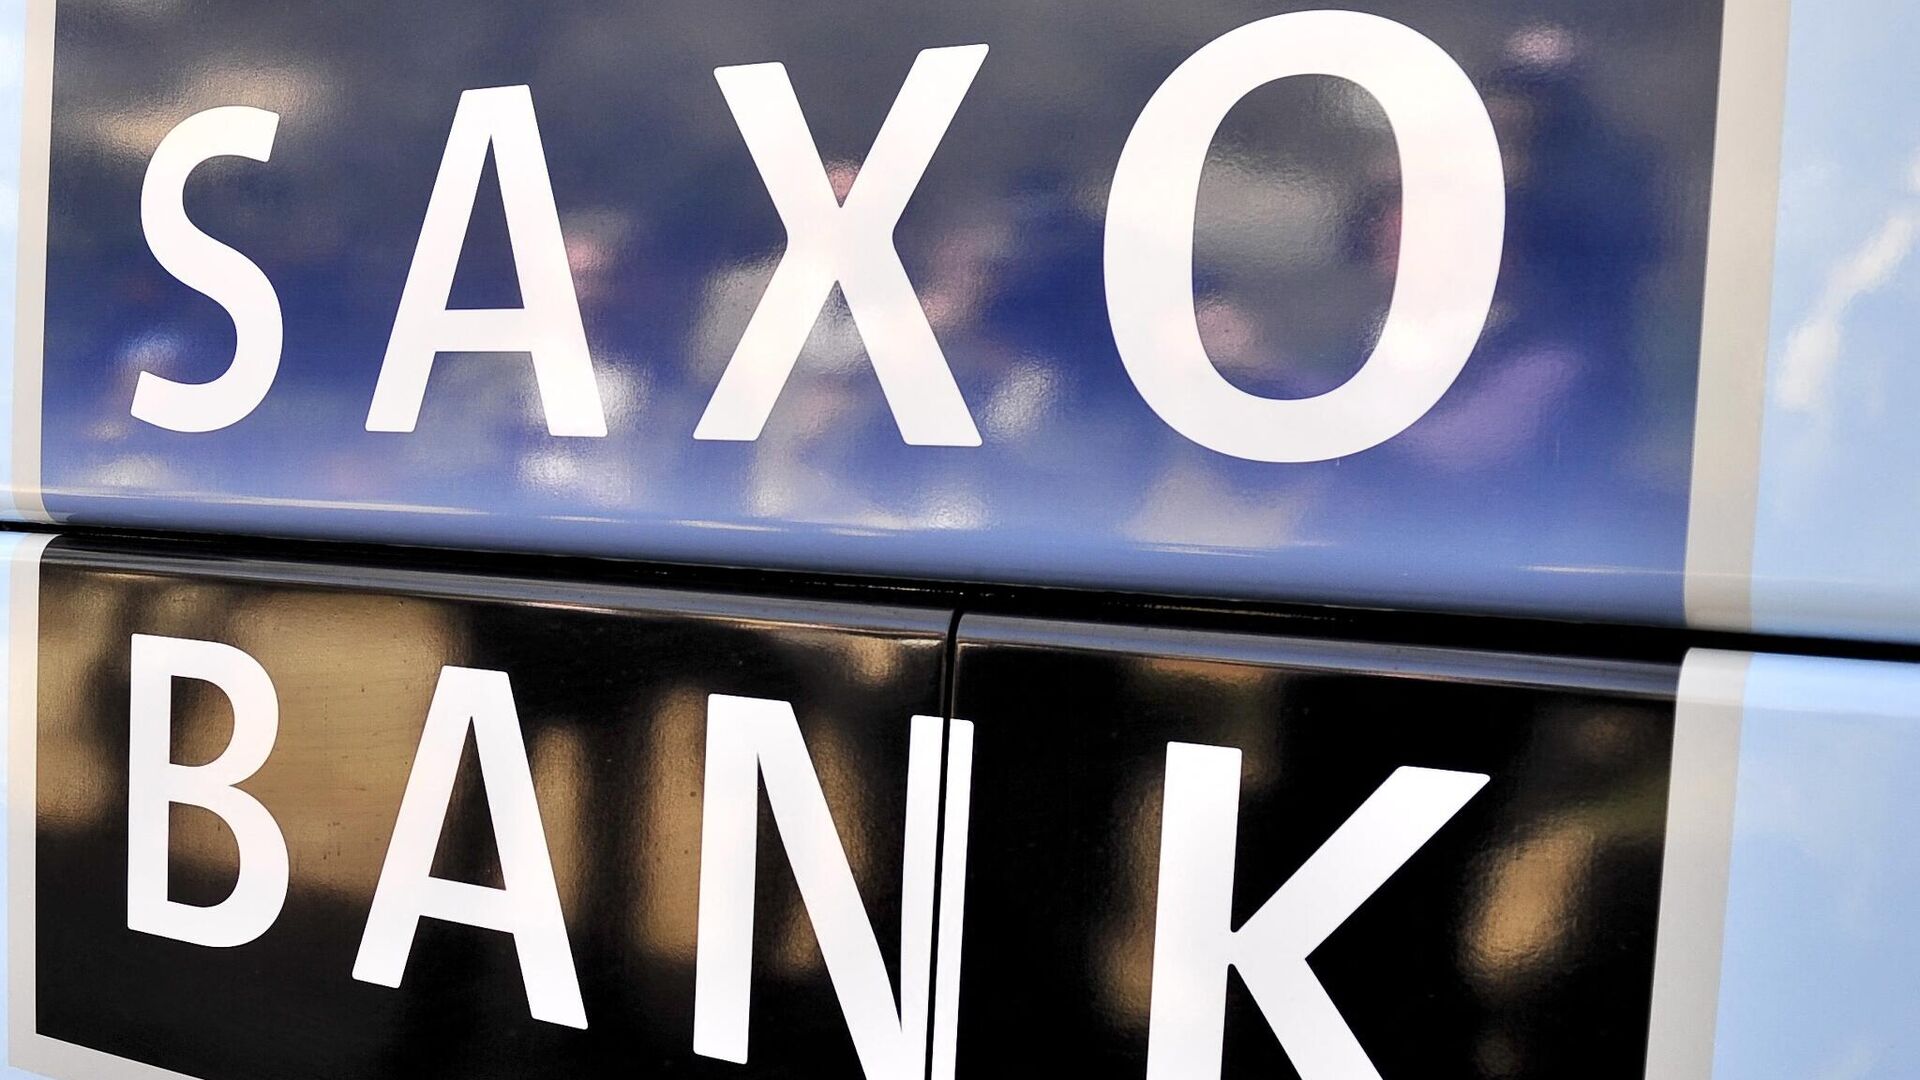  Saxo Bank logo - Sputnik International, 1920, 02.12.2021